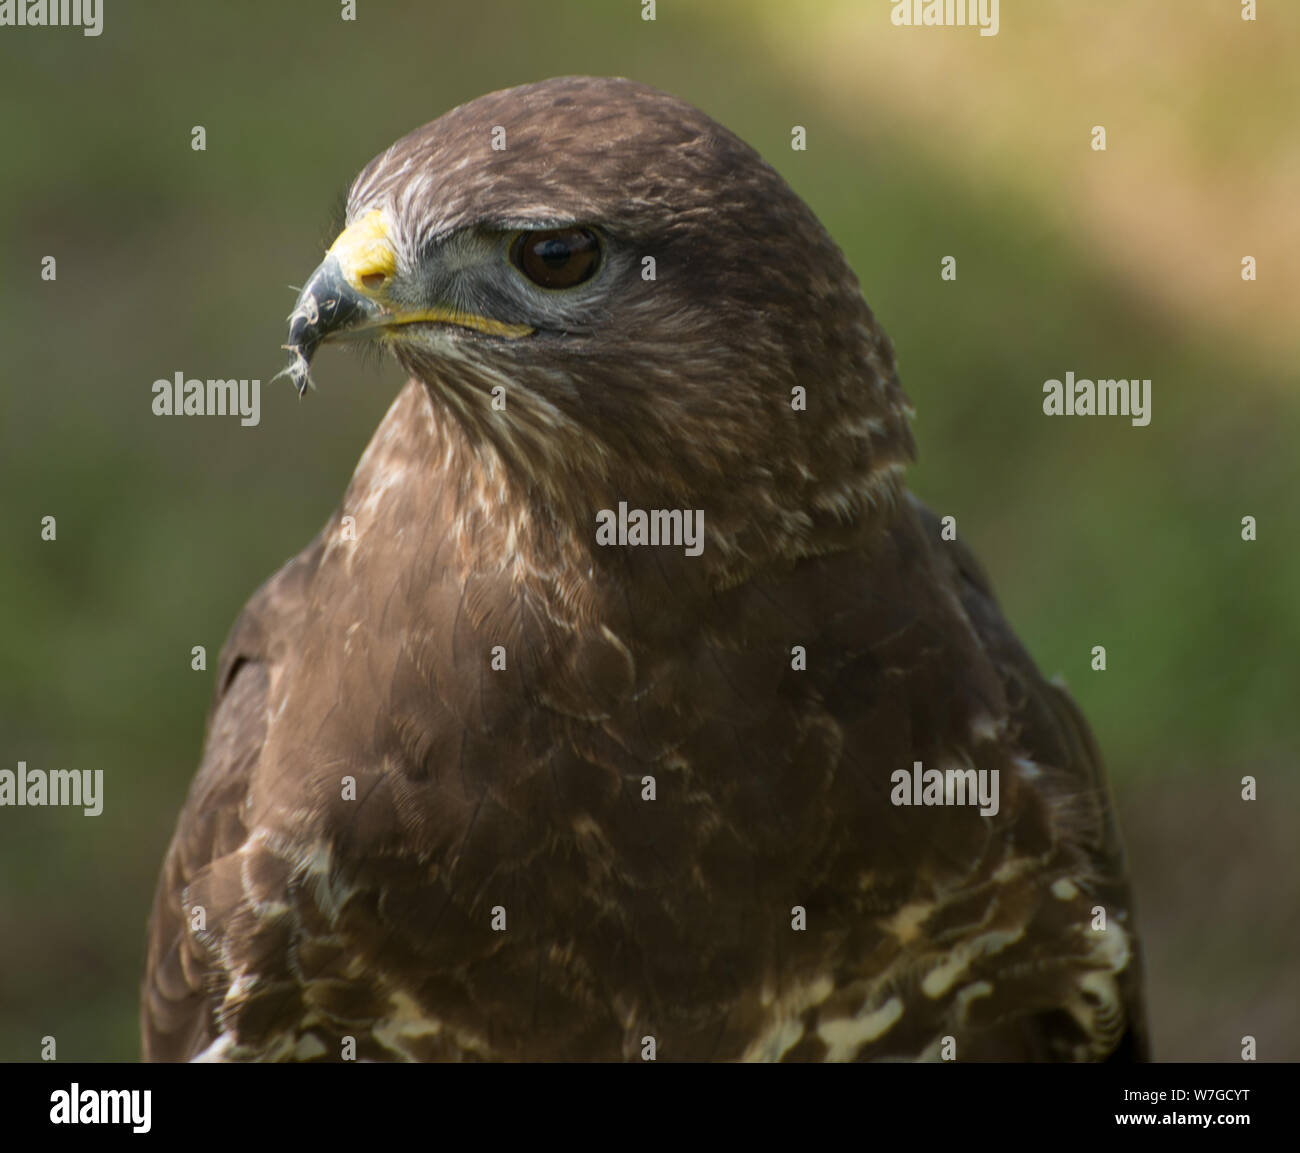 Tête de Buzzard mâle en gros plan avec vue claire de l'oeil, du plumage et de la plume dans le bec Banque D'Images